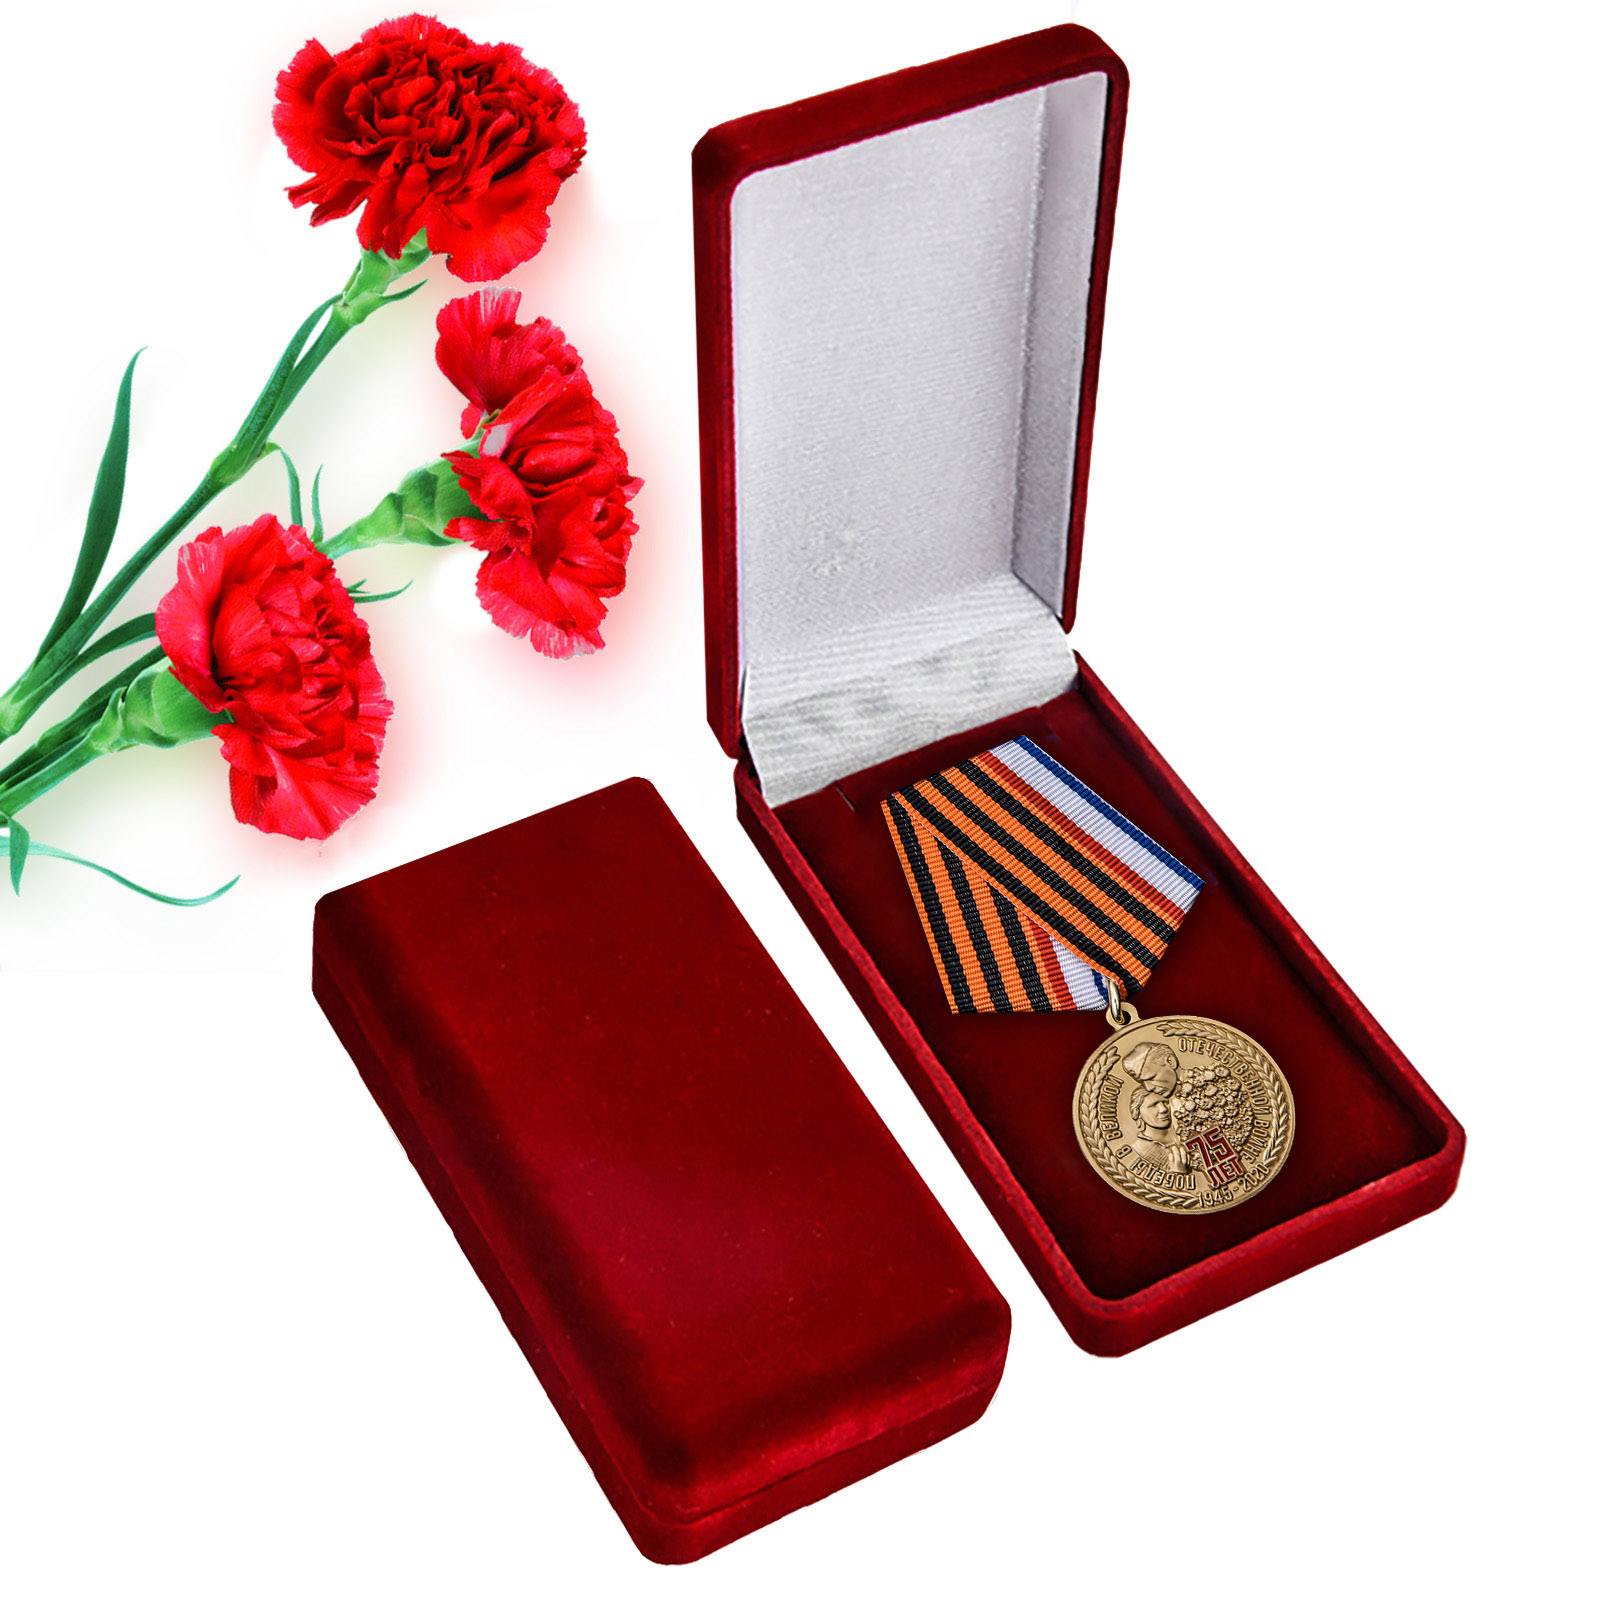 Купить наградную медаль 75 лет Победы в ВОВ Республика Крым с доставкой